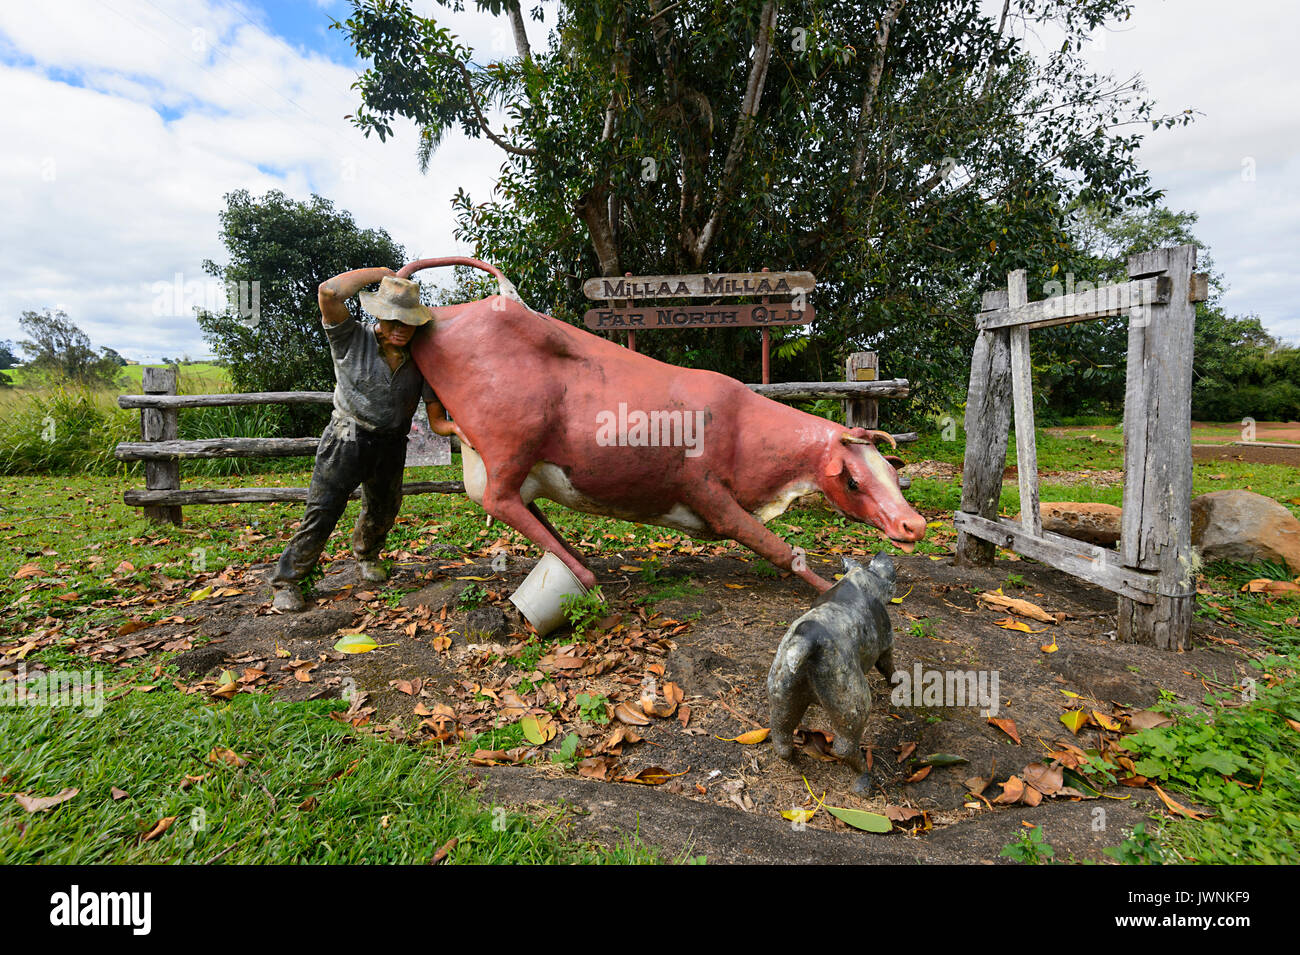 Humorvoll Statue, die ein Bauer eine Kuh versucht mit seinem Hund verursacht Chaos zu Milch, Millaa Millaa, Far North Queensland, FND, QLD, Australien Stockfoto